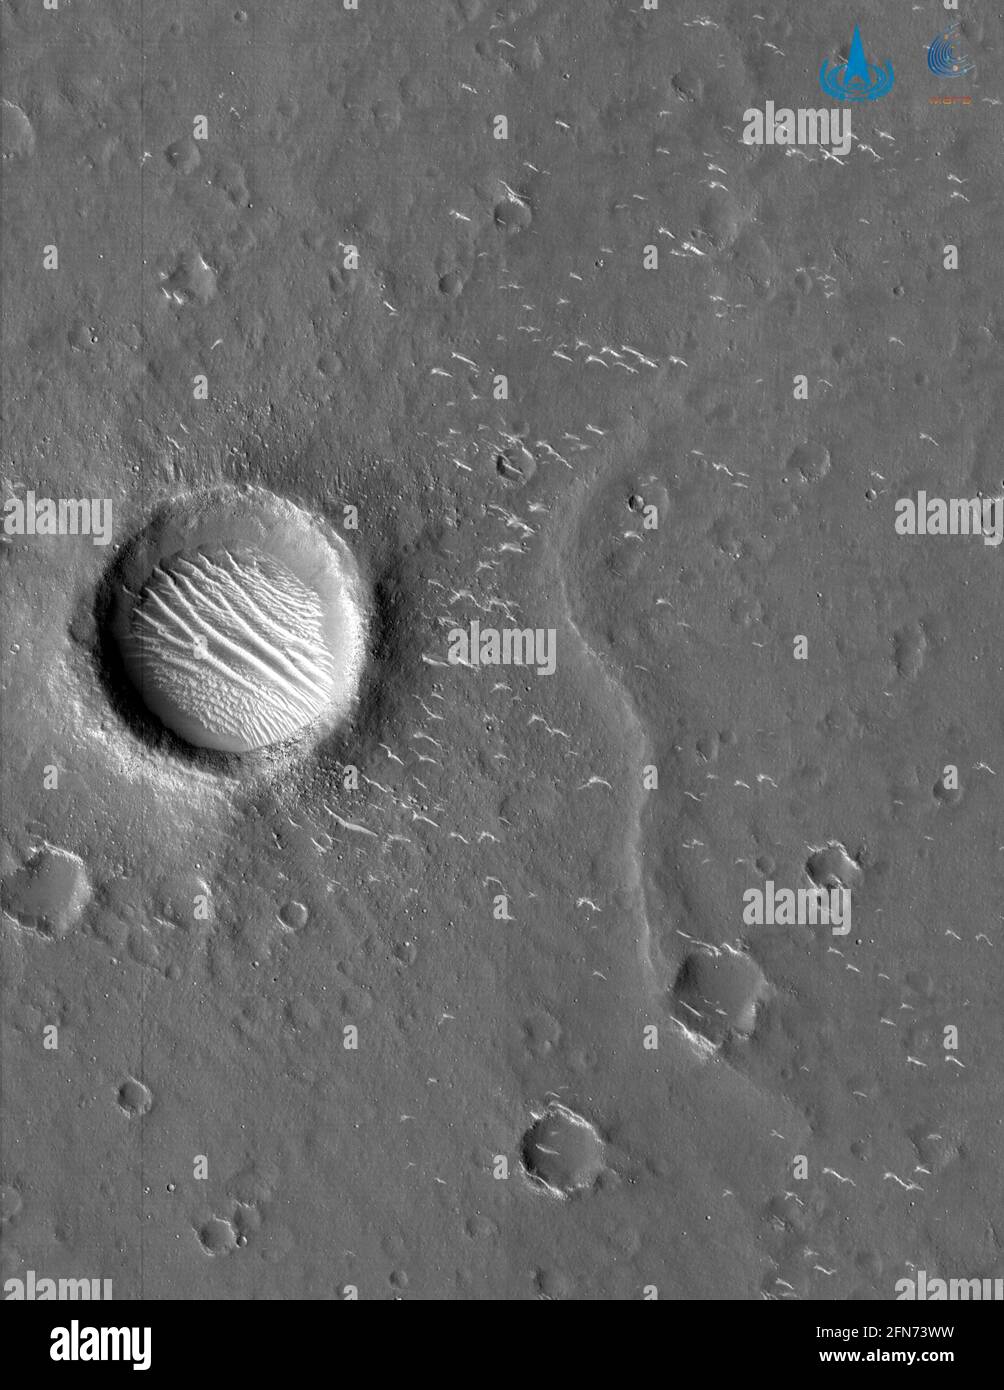 (210515) -- PEKING, 15. Mai 2021 (Xinhua) -- das am 4. März 2021 von der Nationalen Weltraumbehörde Chinas (CNSA) veröffentlichte Foto zeigt ein hochauflösendes Bild des Mars, das von der Tianwen-1-Sonde des Landes aufgenommen wurde. Der Lander, der Chinas ersten Mars-Rover trägt, ist auf dem roten Planeten aufgesetzt, bestätigte die CNSA am Samstagmorgen. MIT „Chinas Sonde landet auf dem Mars“ (CNSA/Handout via Xinhua) Stockfoto